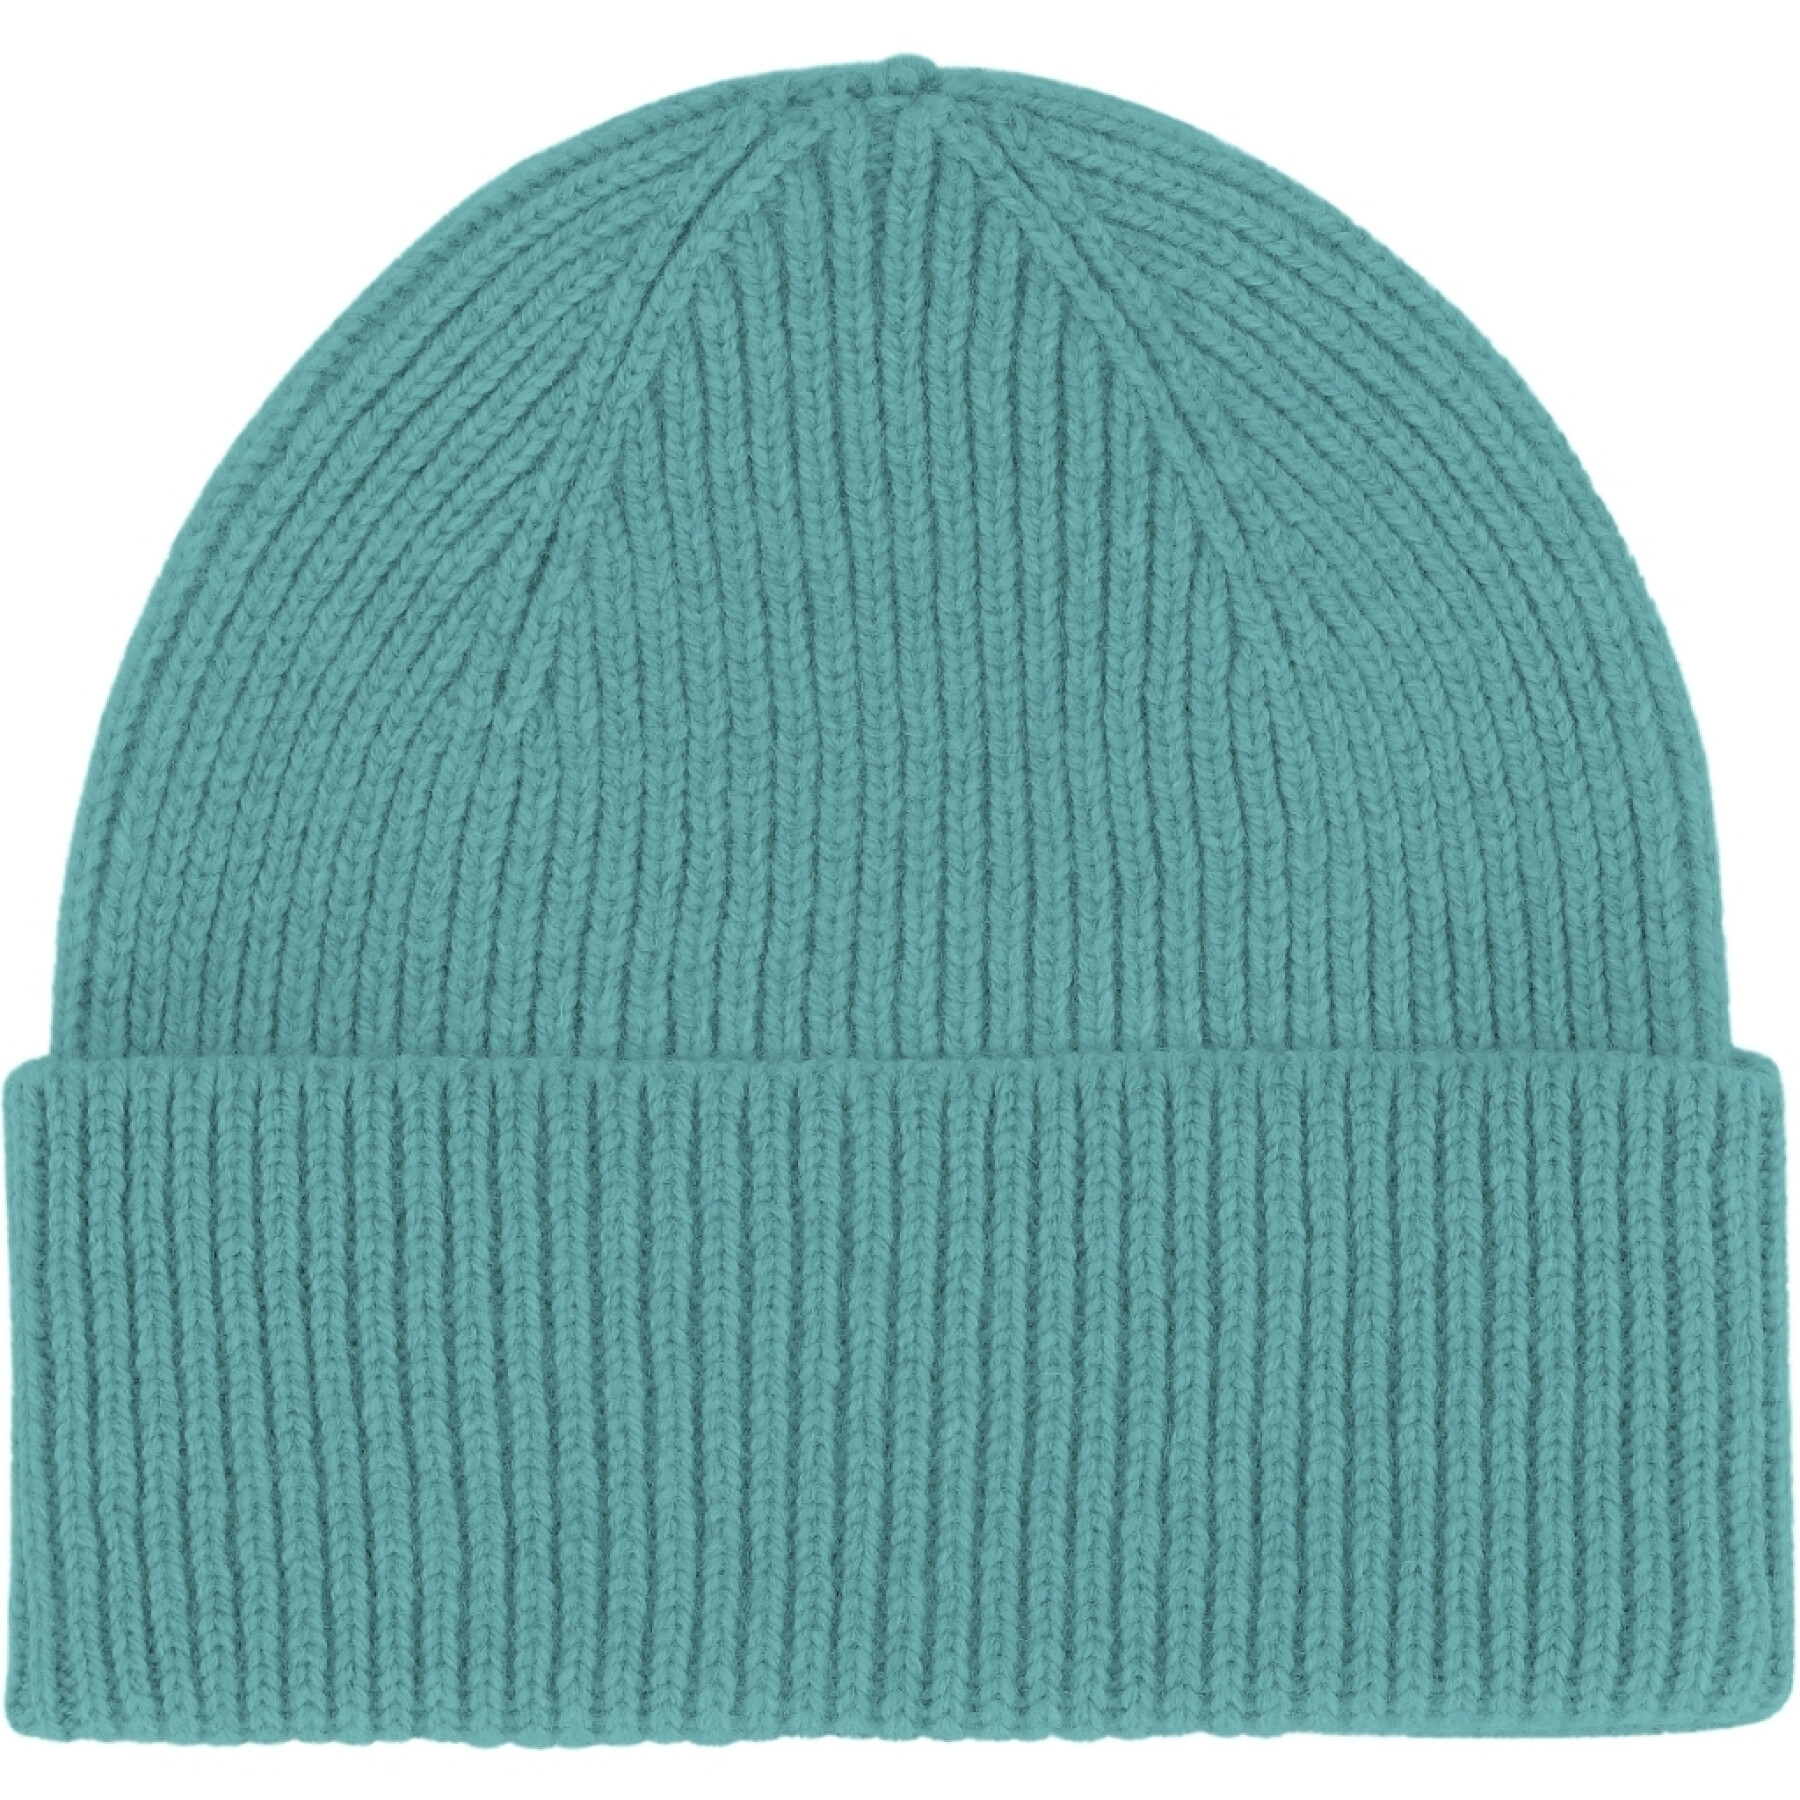 Mütze mit einfacher Falte Colorful Standard Teal Blue